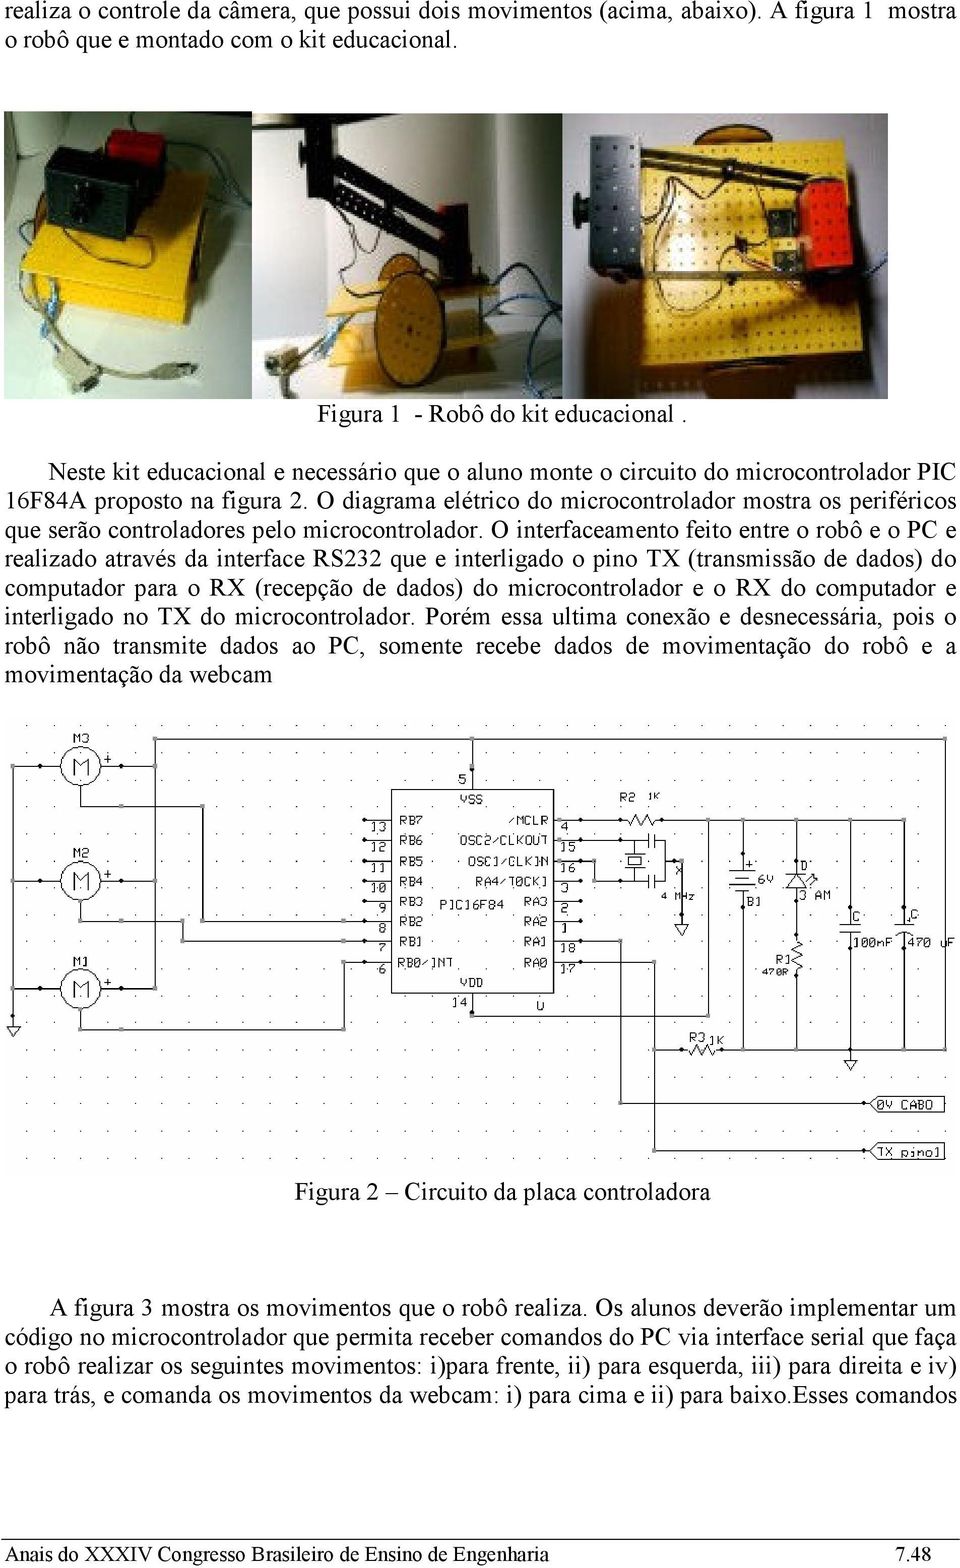 O diagrama elétrico do microcontrolador mostra os periféricos que serão controladores pelo microcontrolador.